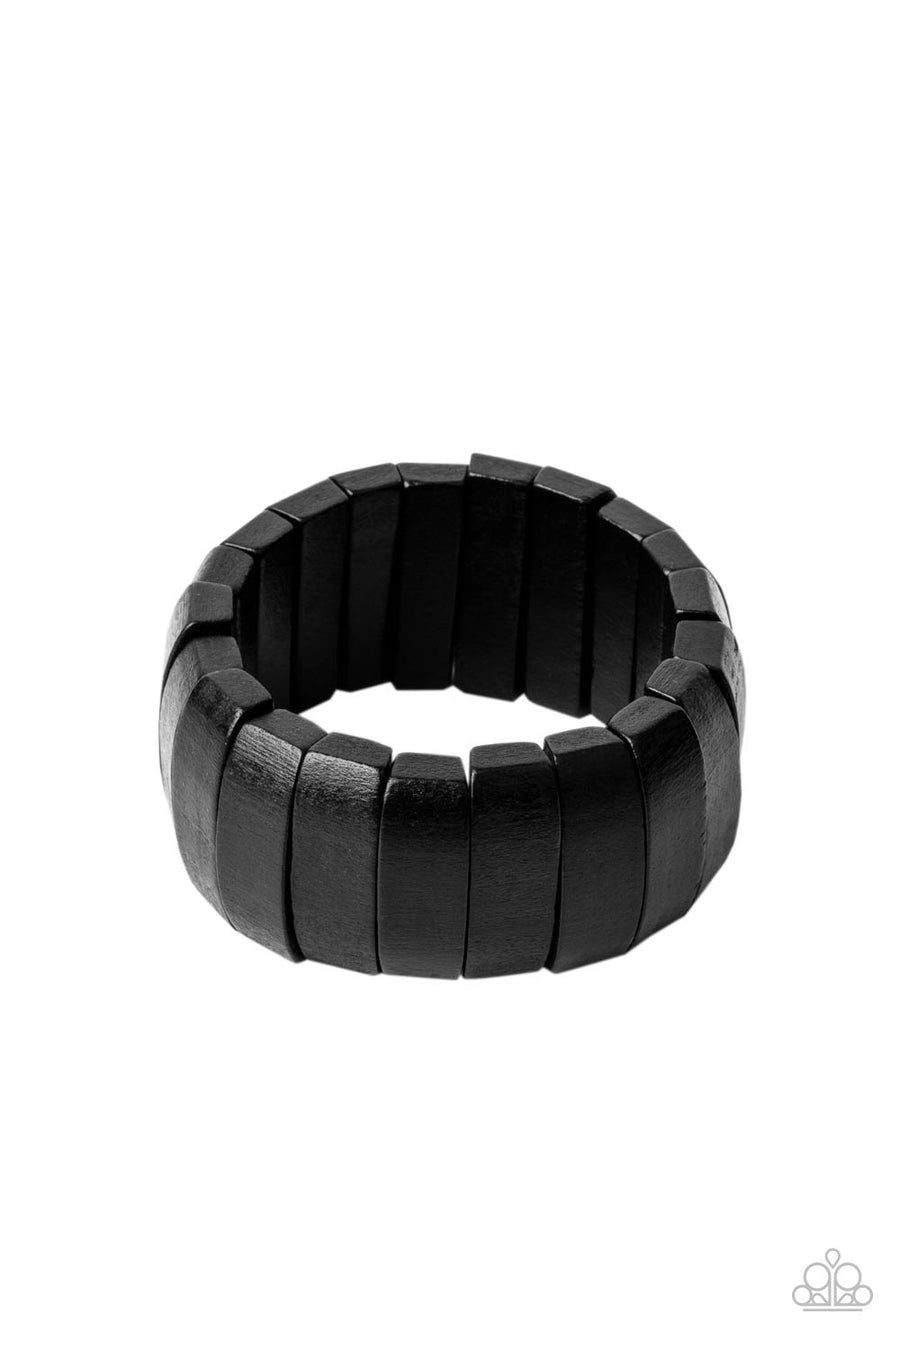 Raise The BARBADOS - Black Wood Stretch Bracelet-Paparrazi Accessories